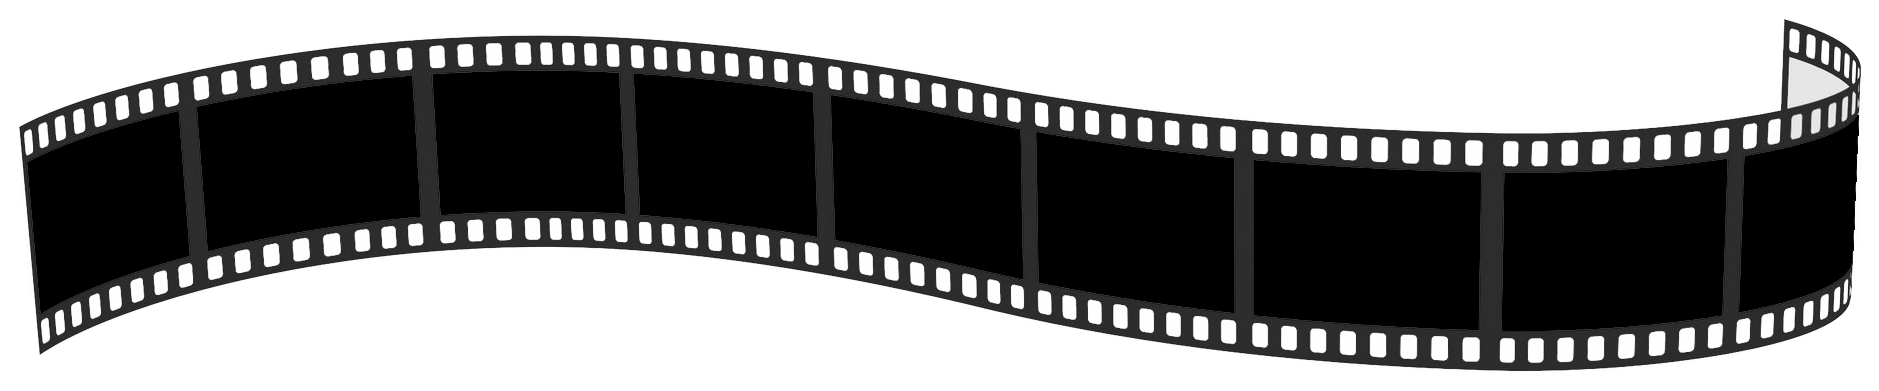 Download PNG image - Filmstrip Vector Film Reel PNG Image 